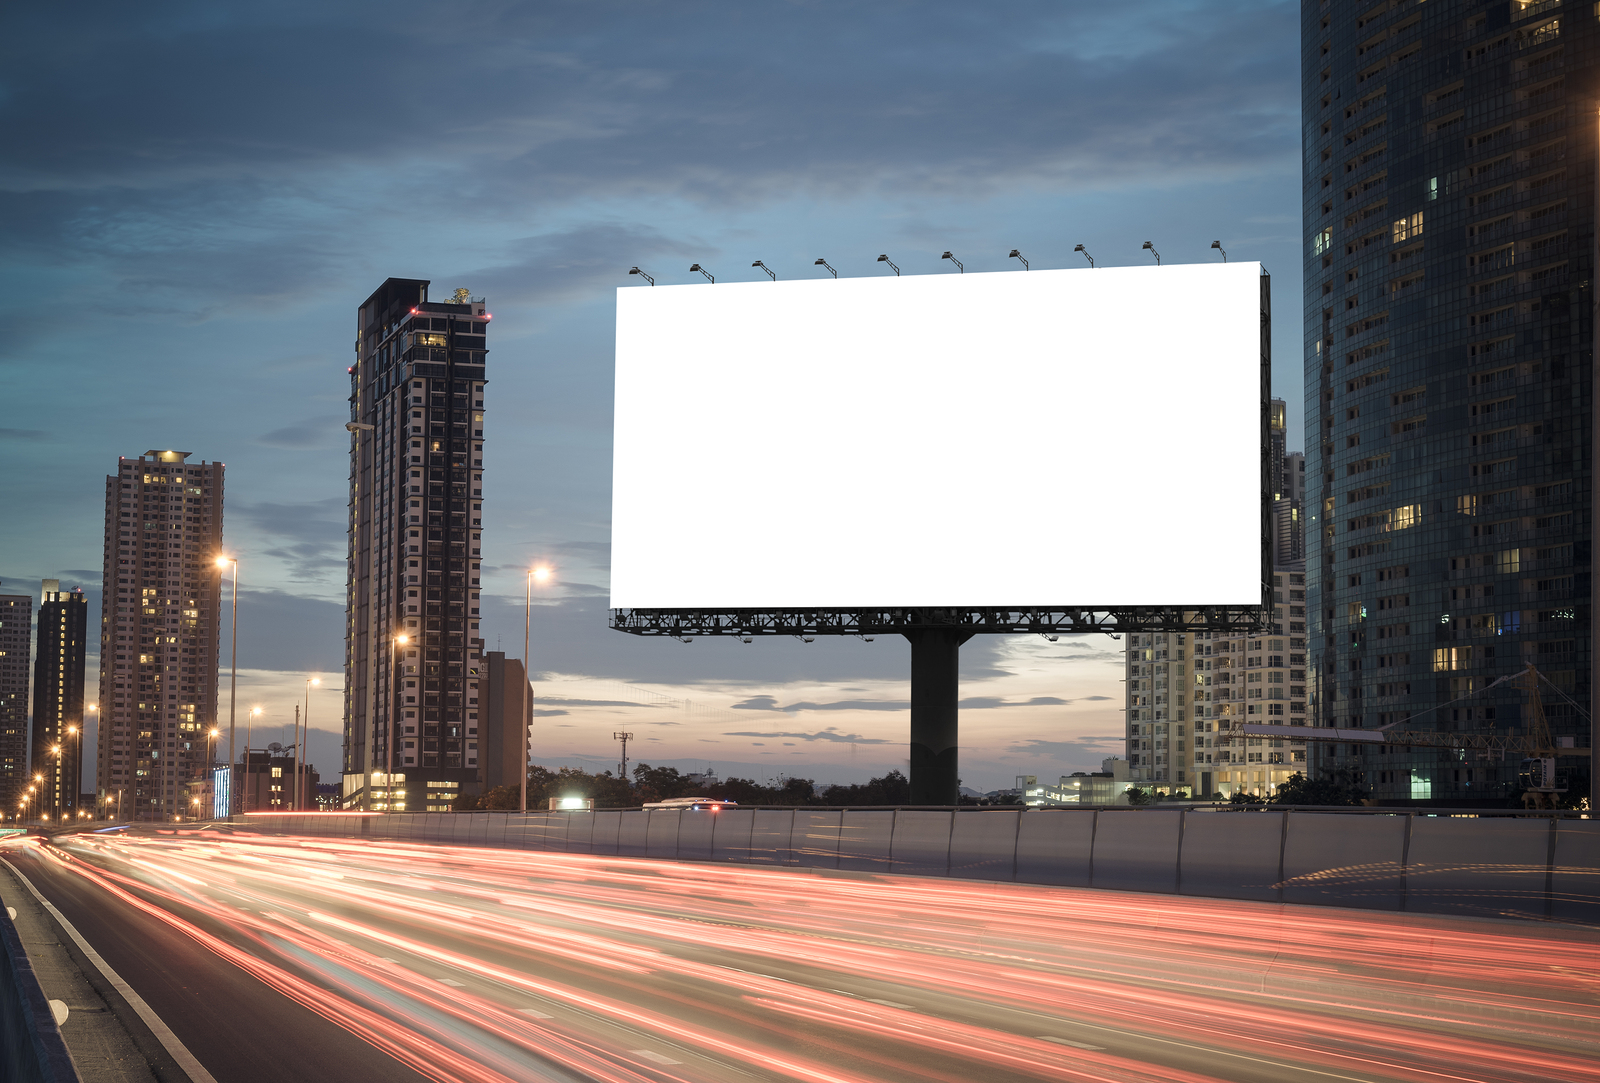 digital billboard